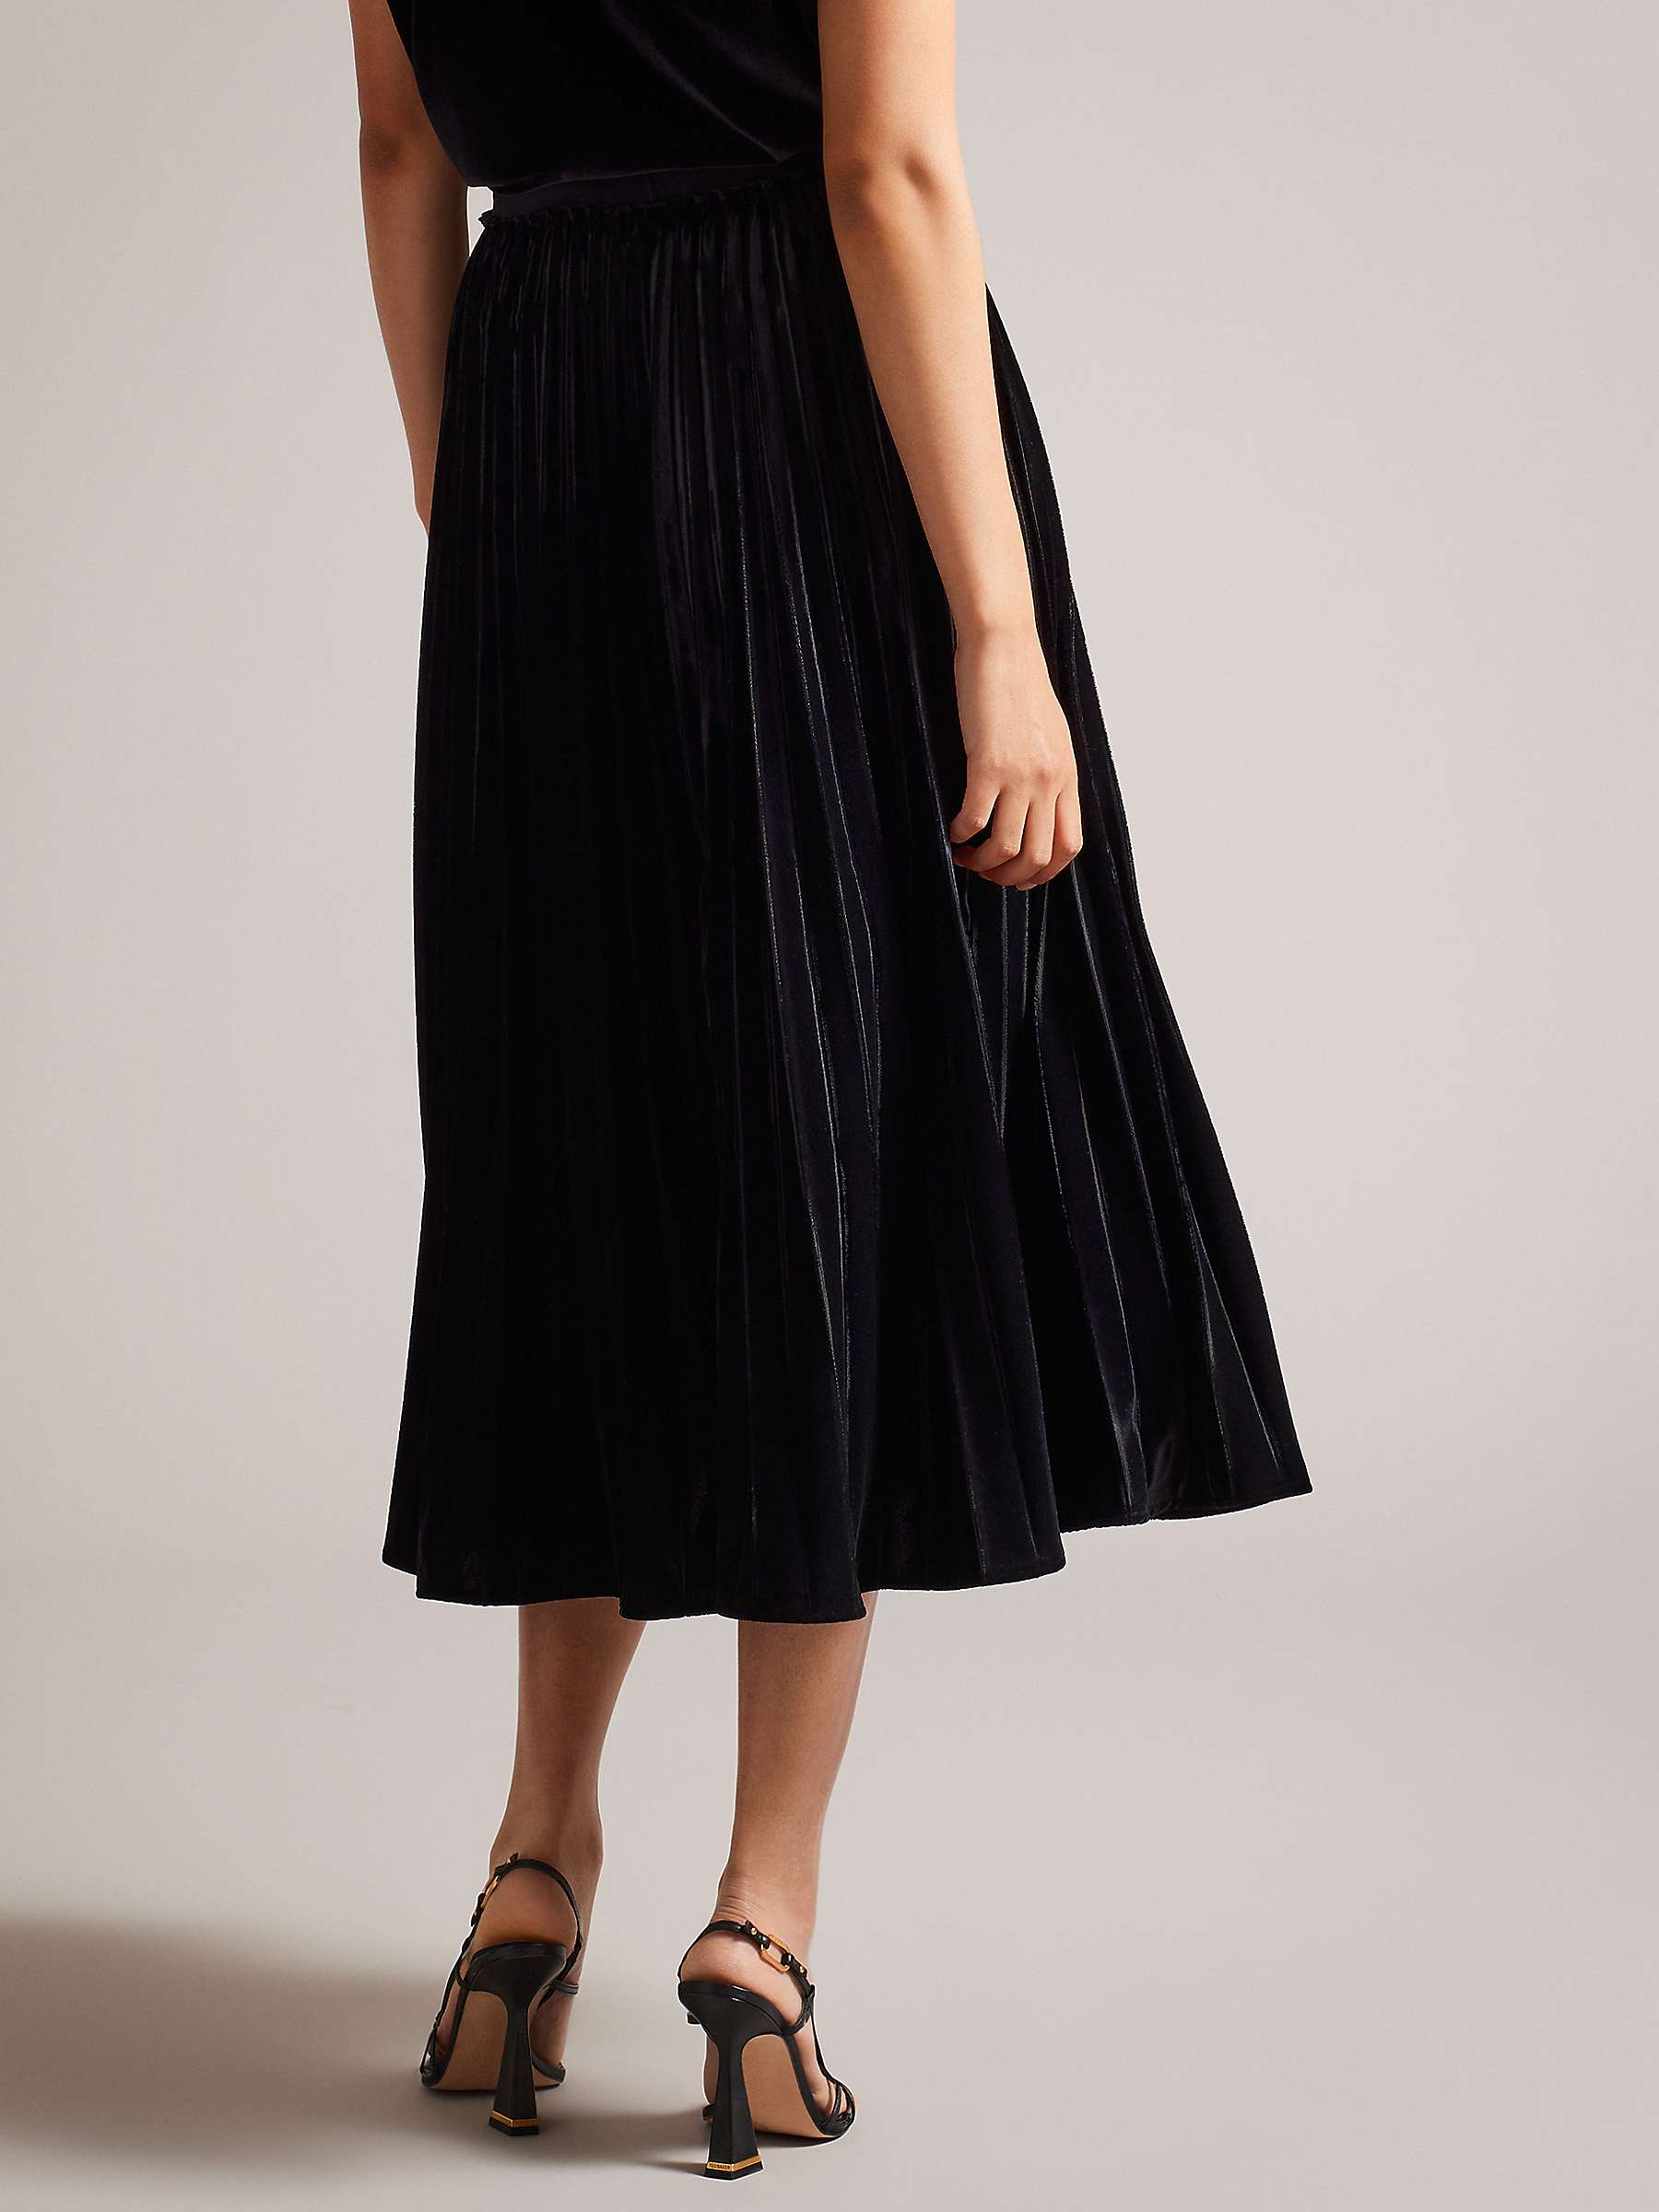 Ted Baker Gjill Pleated Velvet Midi Skirt, Black at John Lewis & Partners